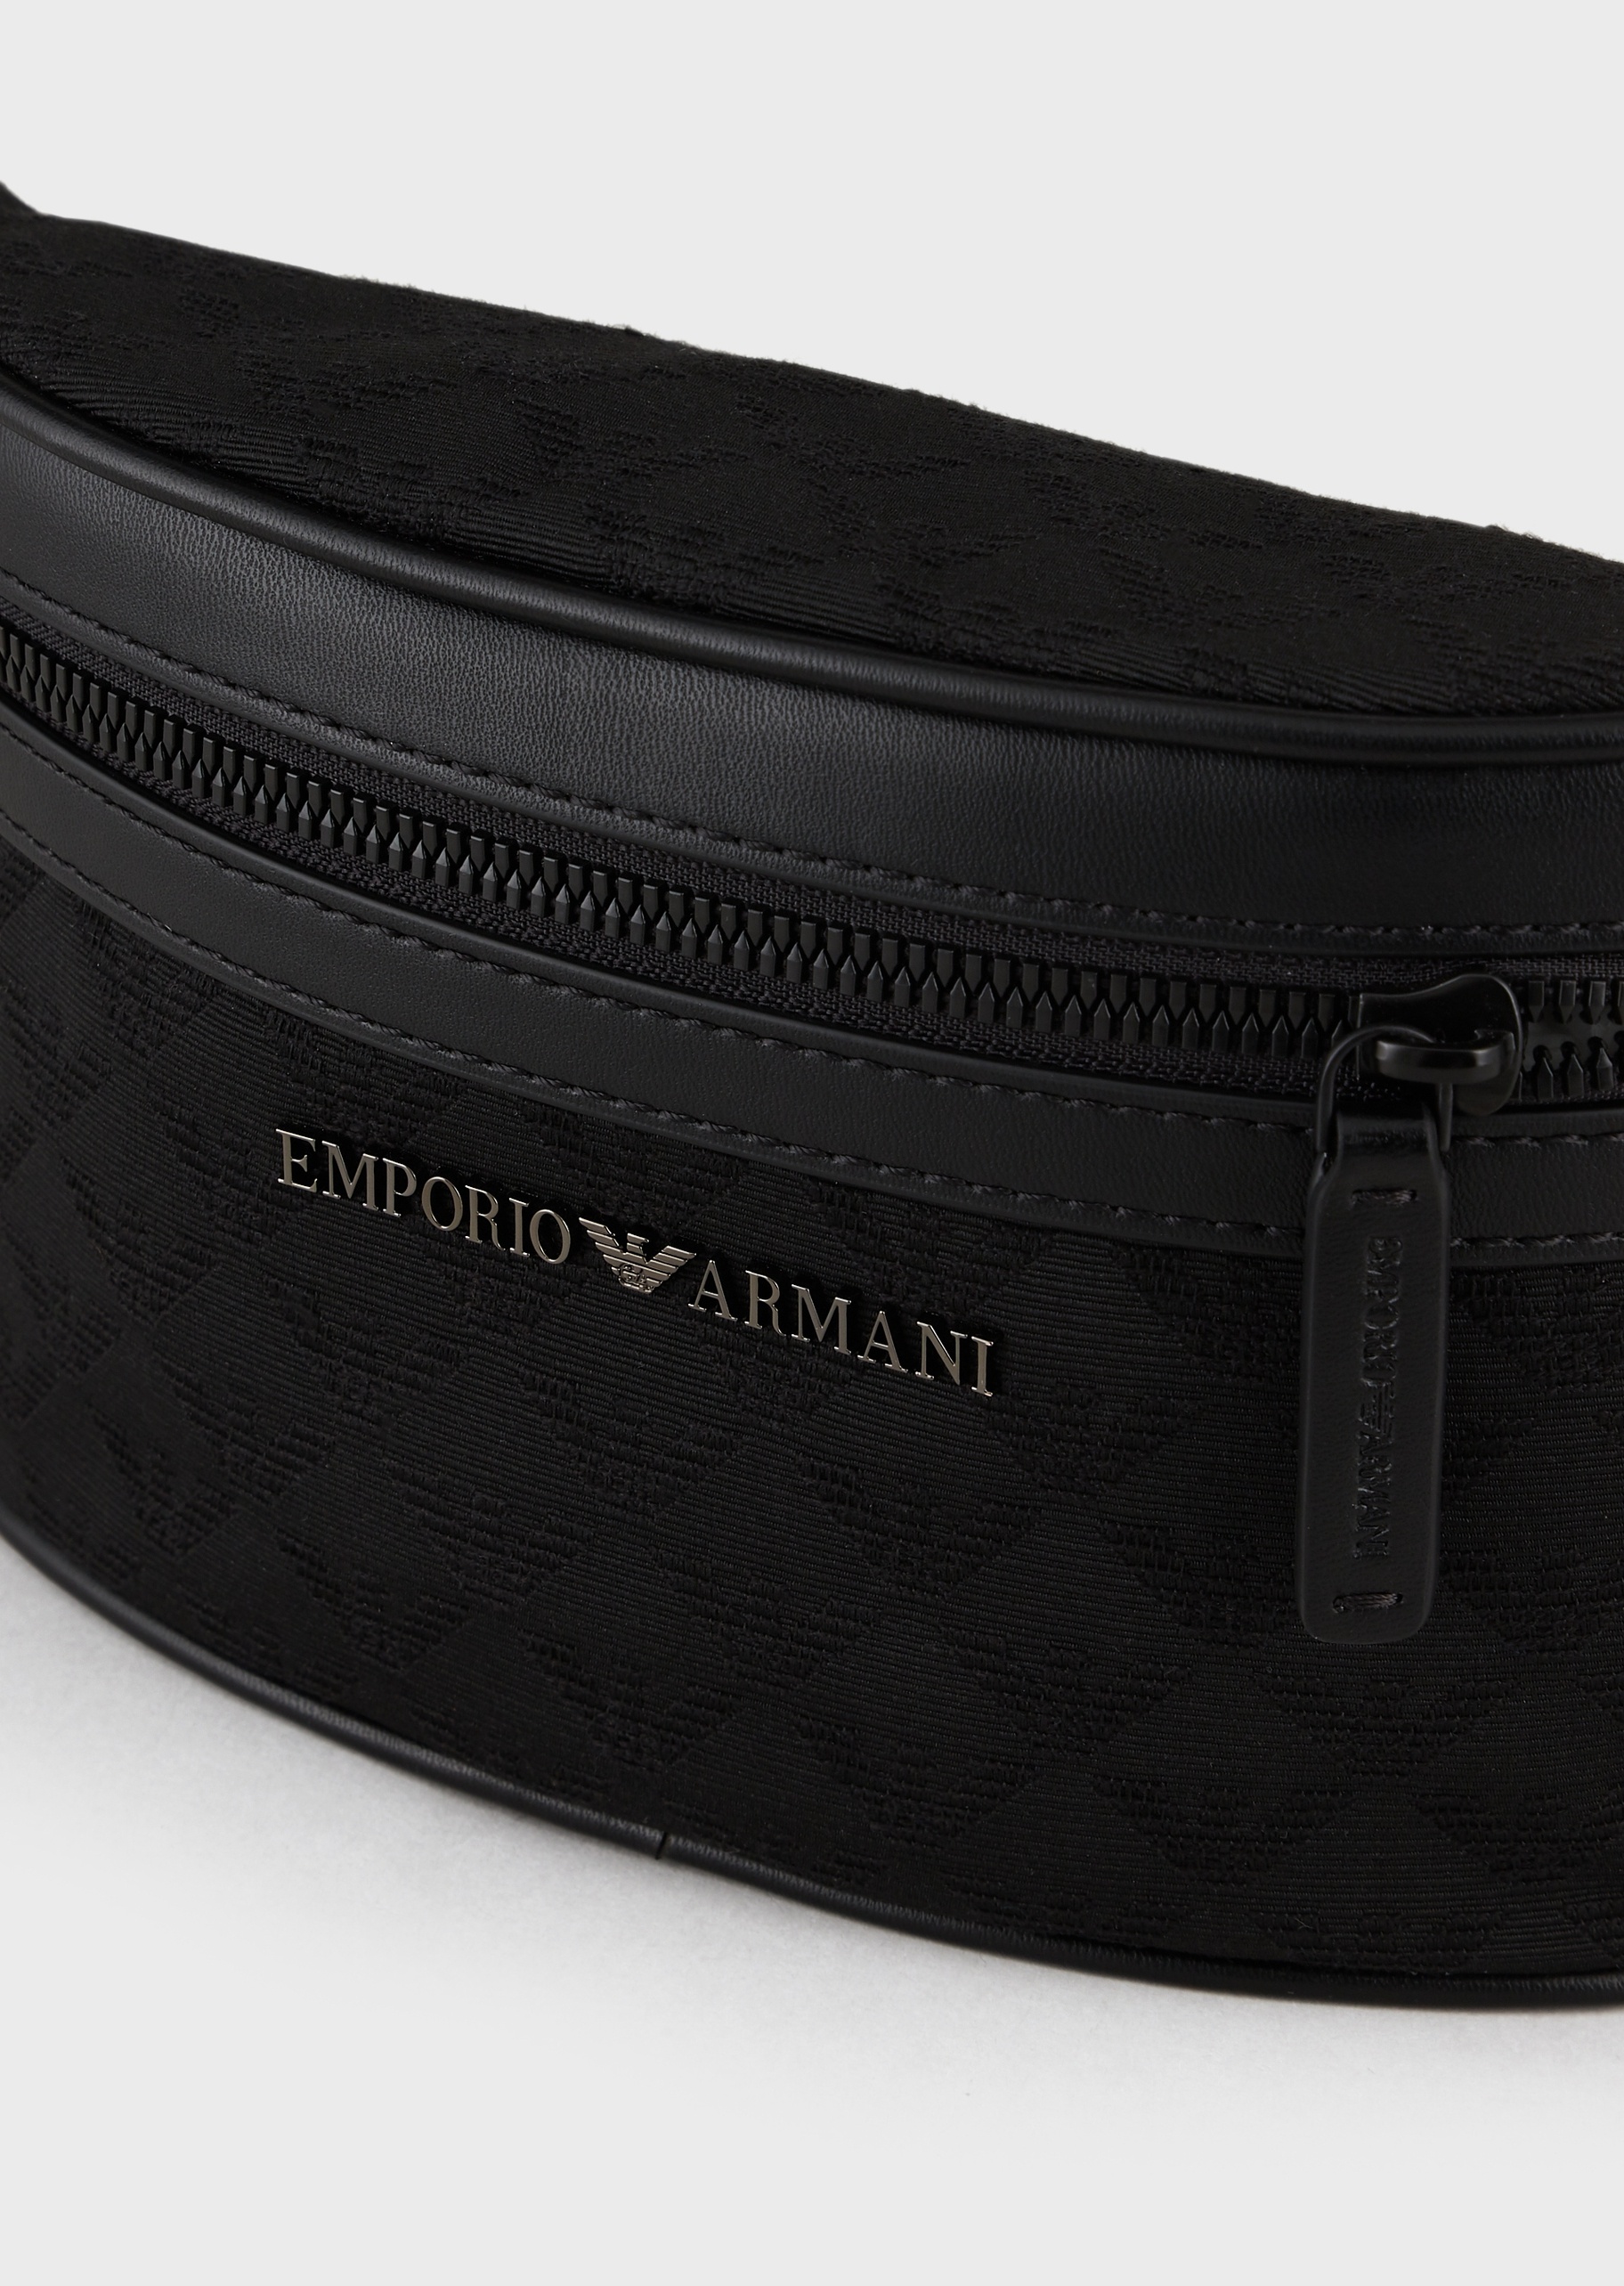 Emporio Armani 男士小号拉链插扣插扣调节袢带休闲腰包